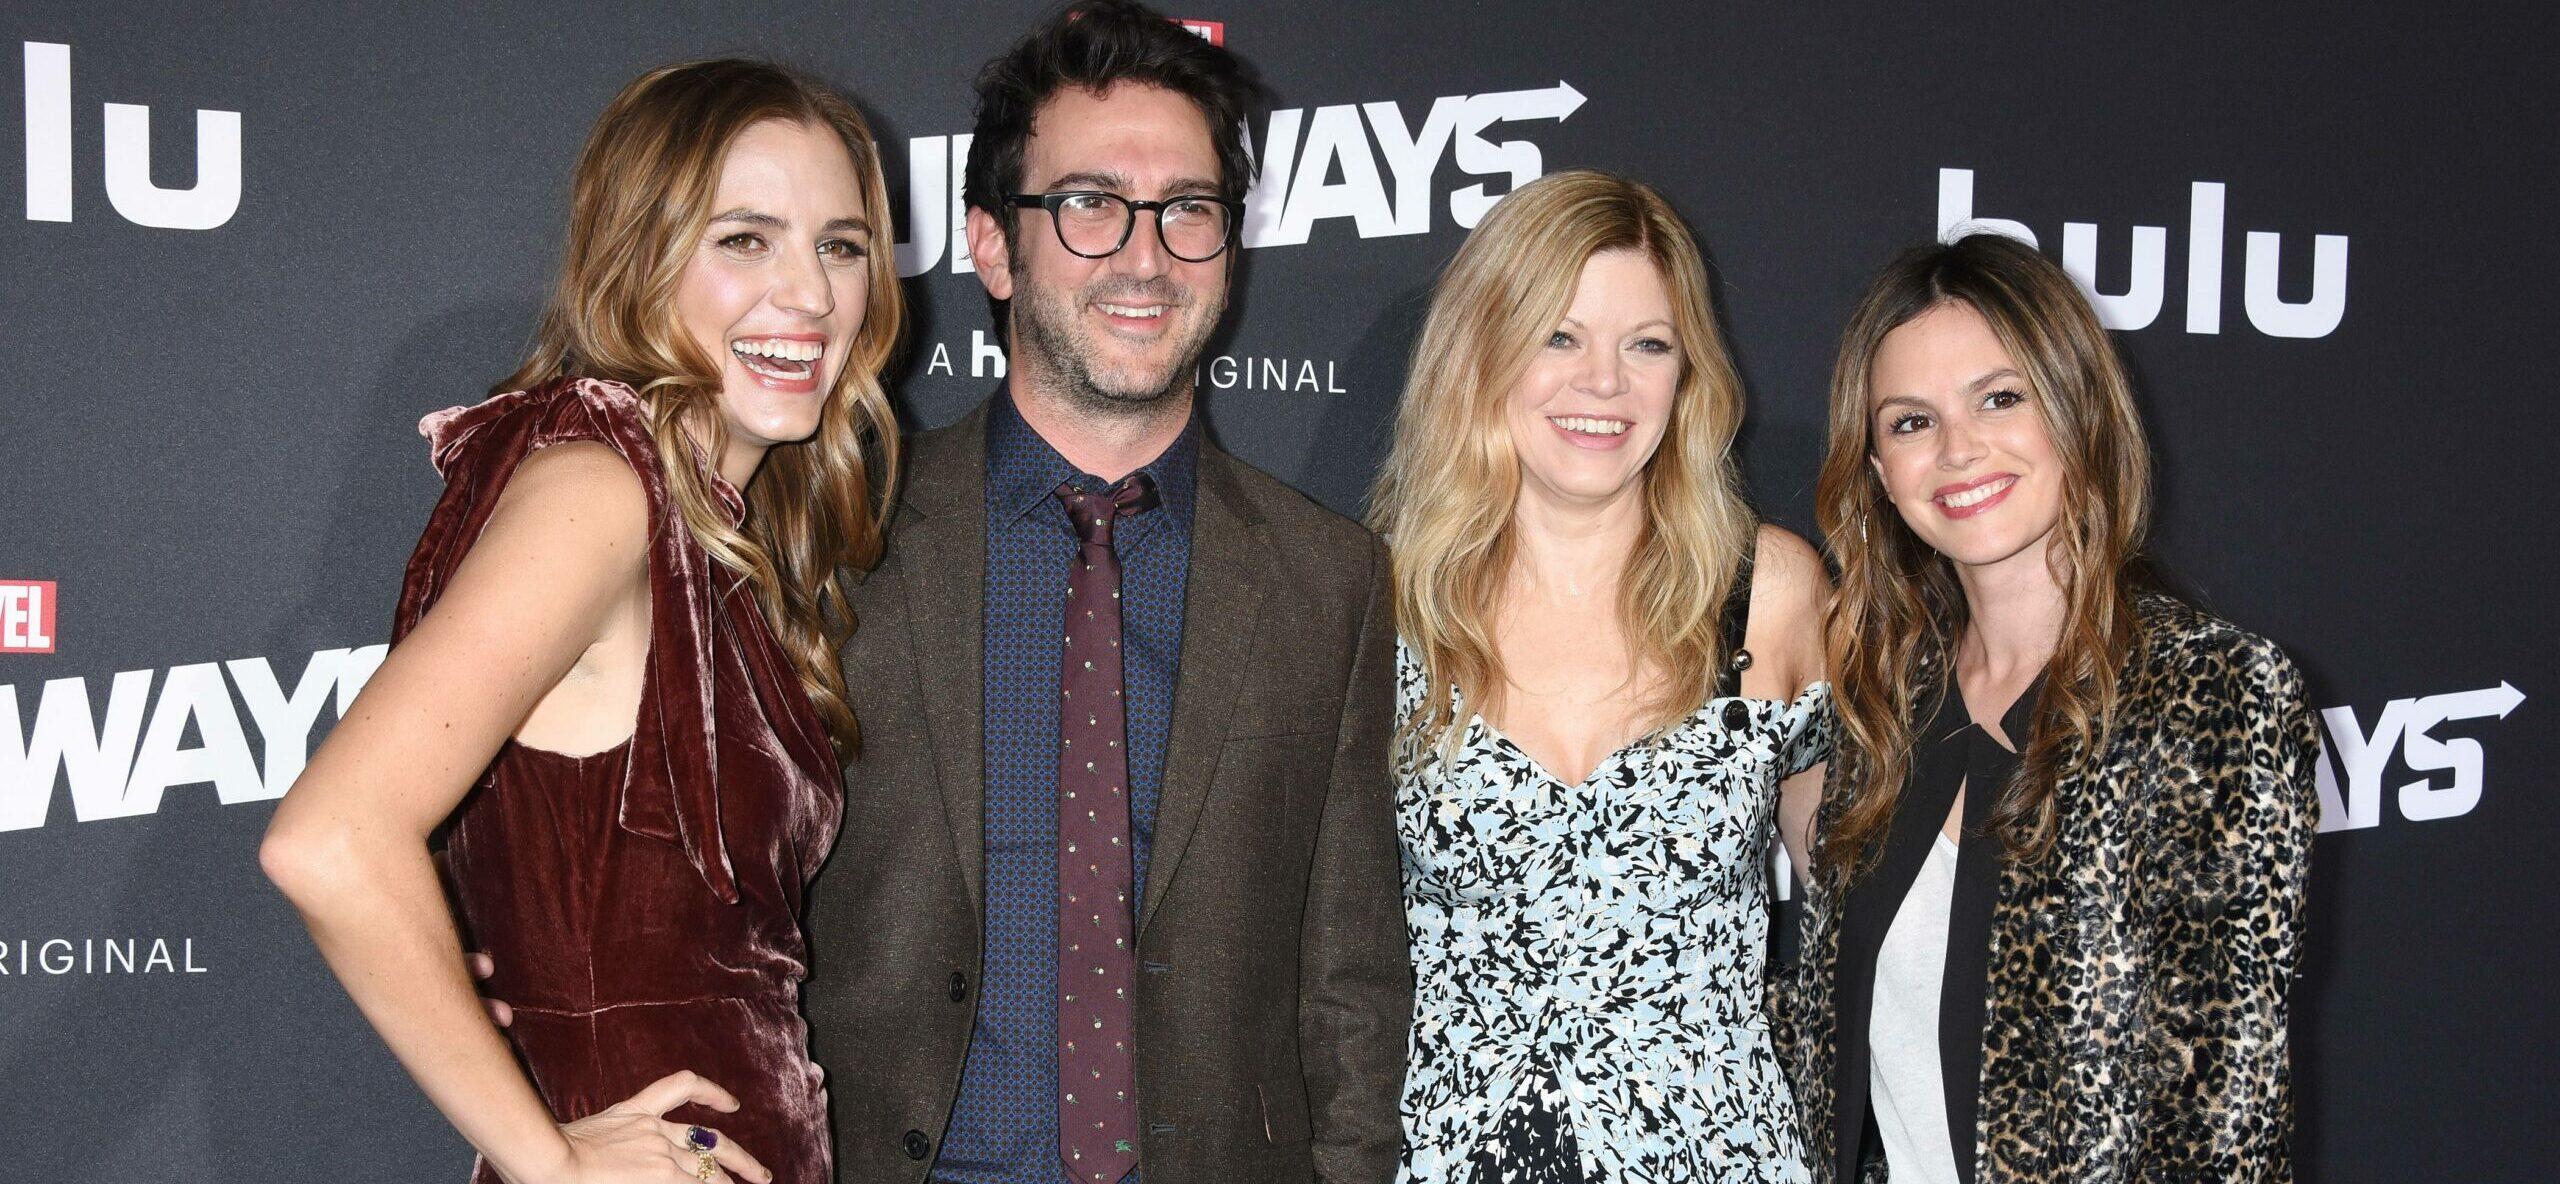 'Gossip Girl' Creator Josh Schwartz Files For Divorce After 13 Years Of Marriage